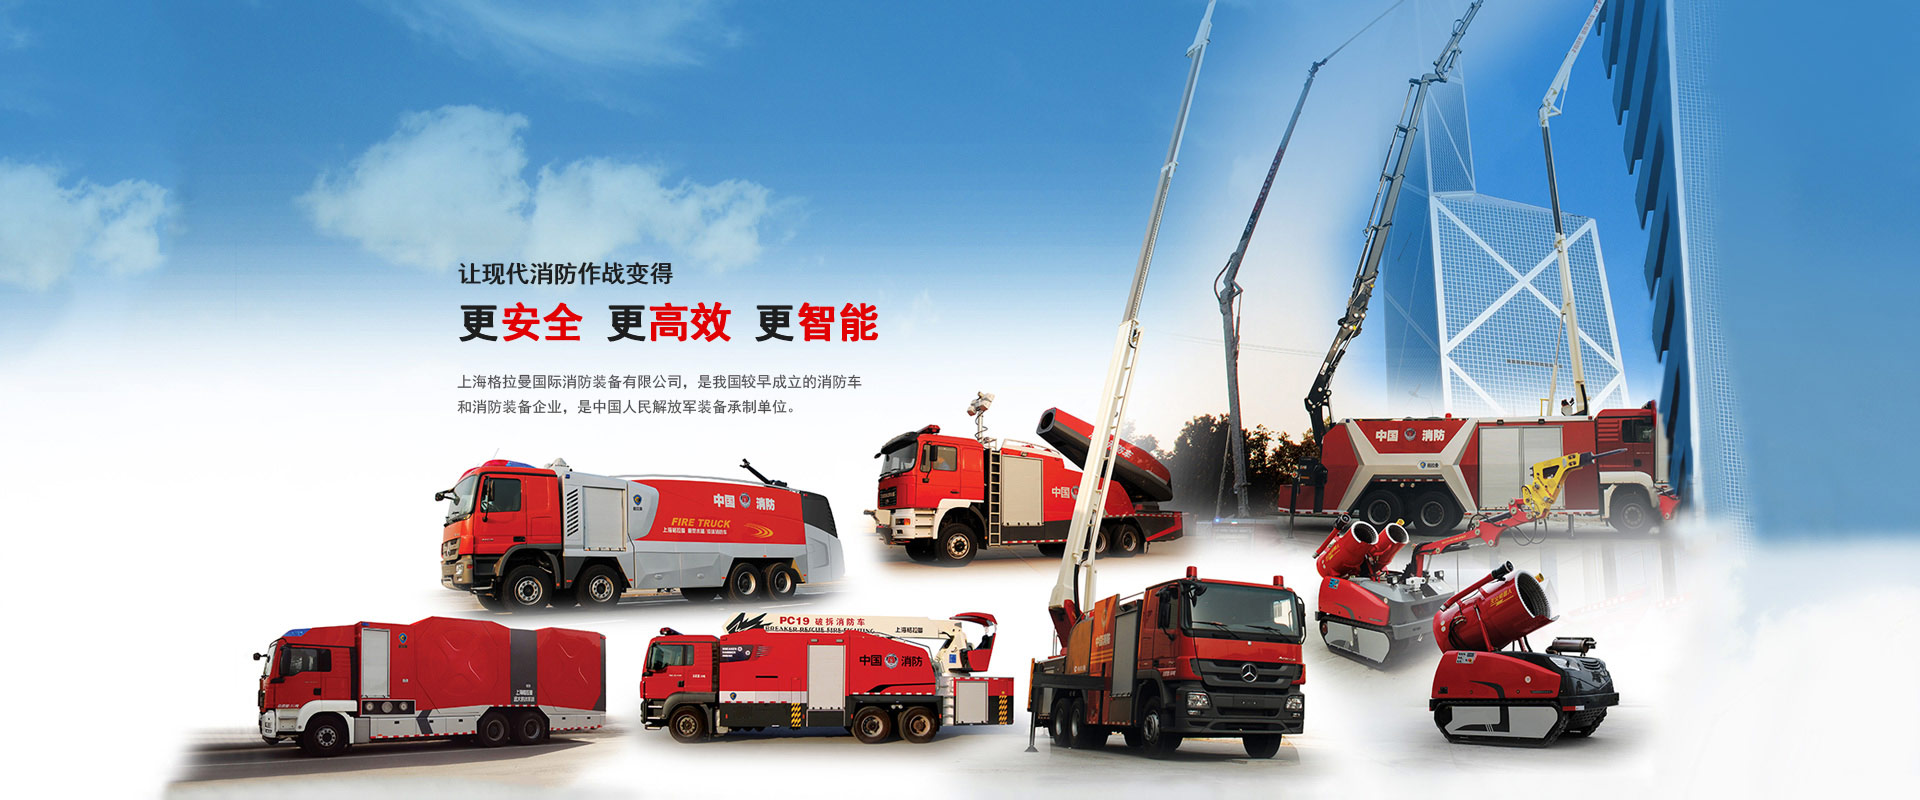 上海格拉曼國際消防裝備有限公司